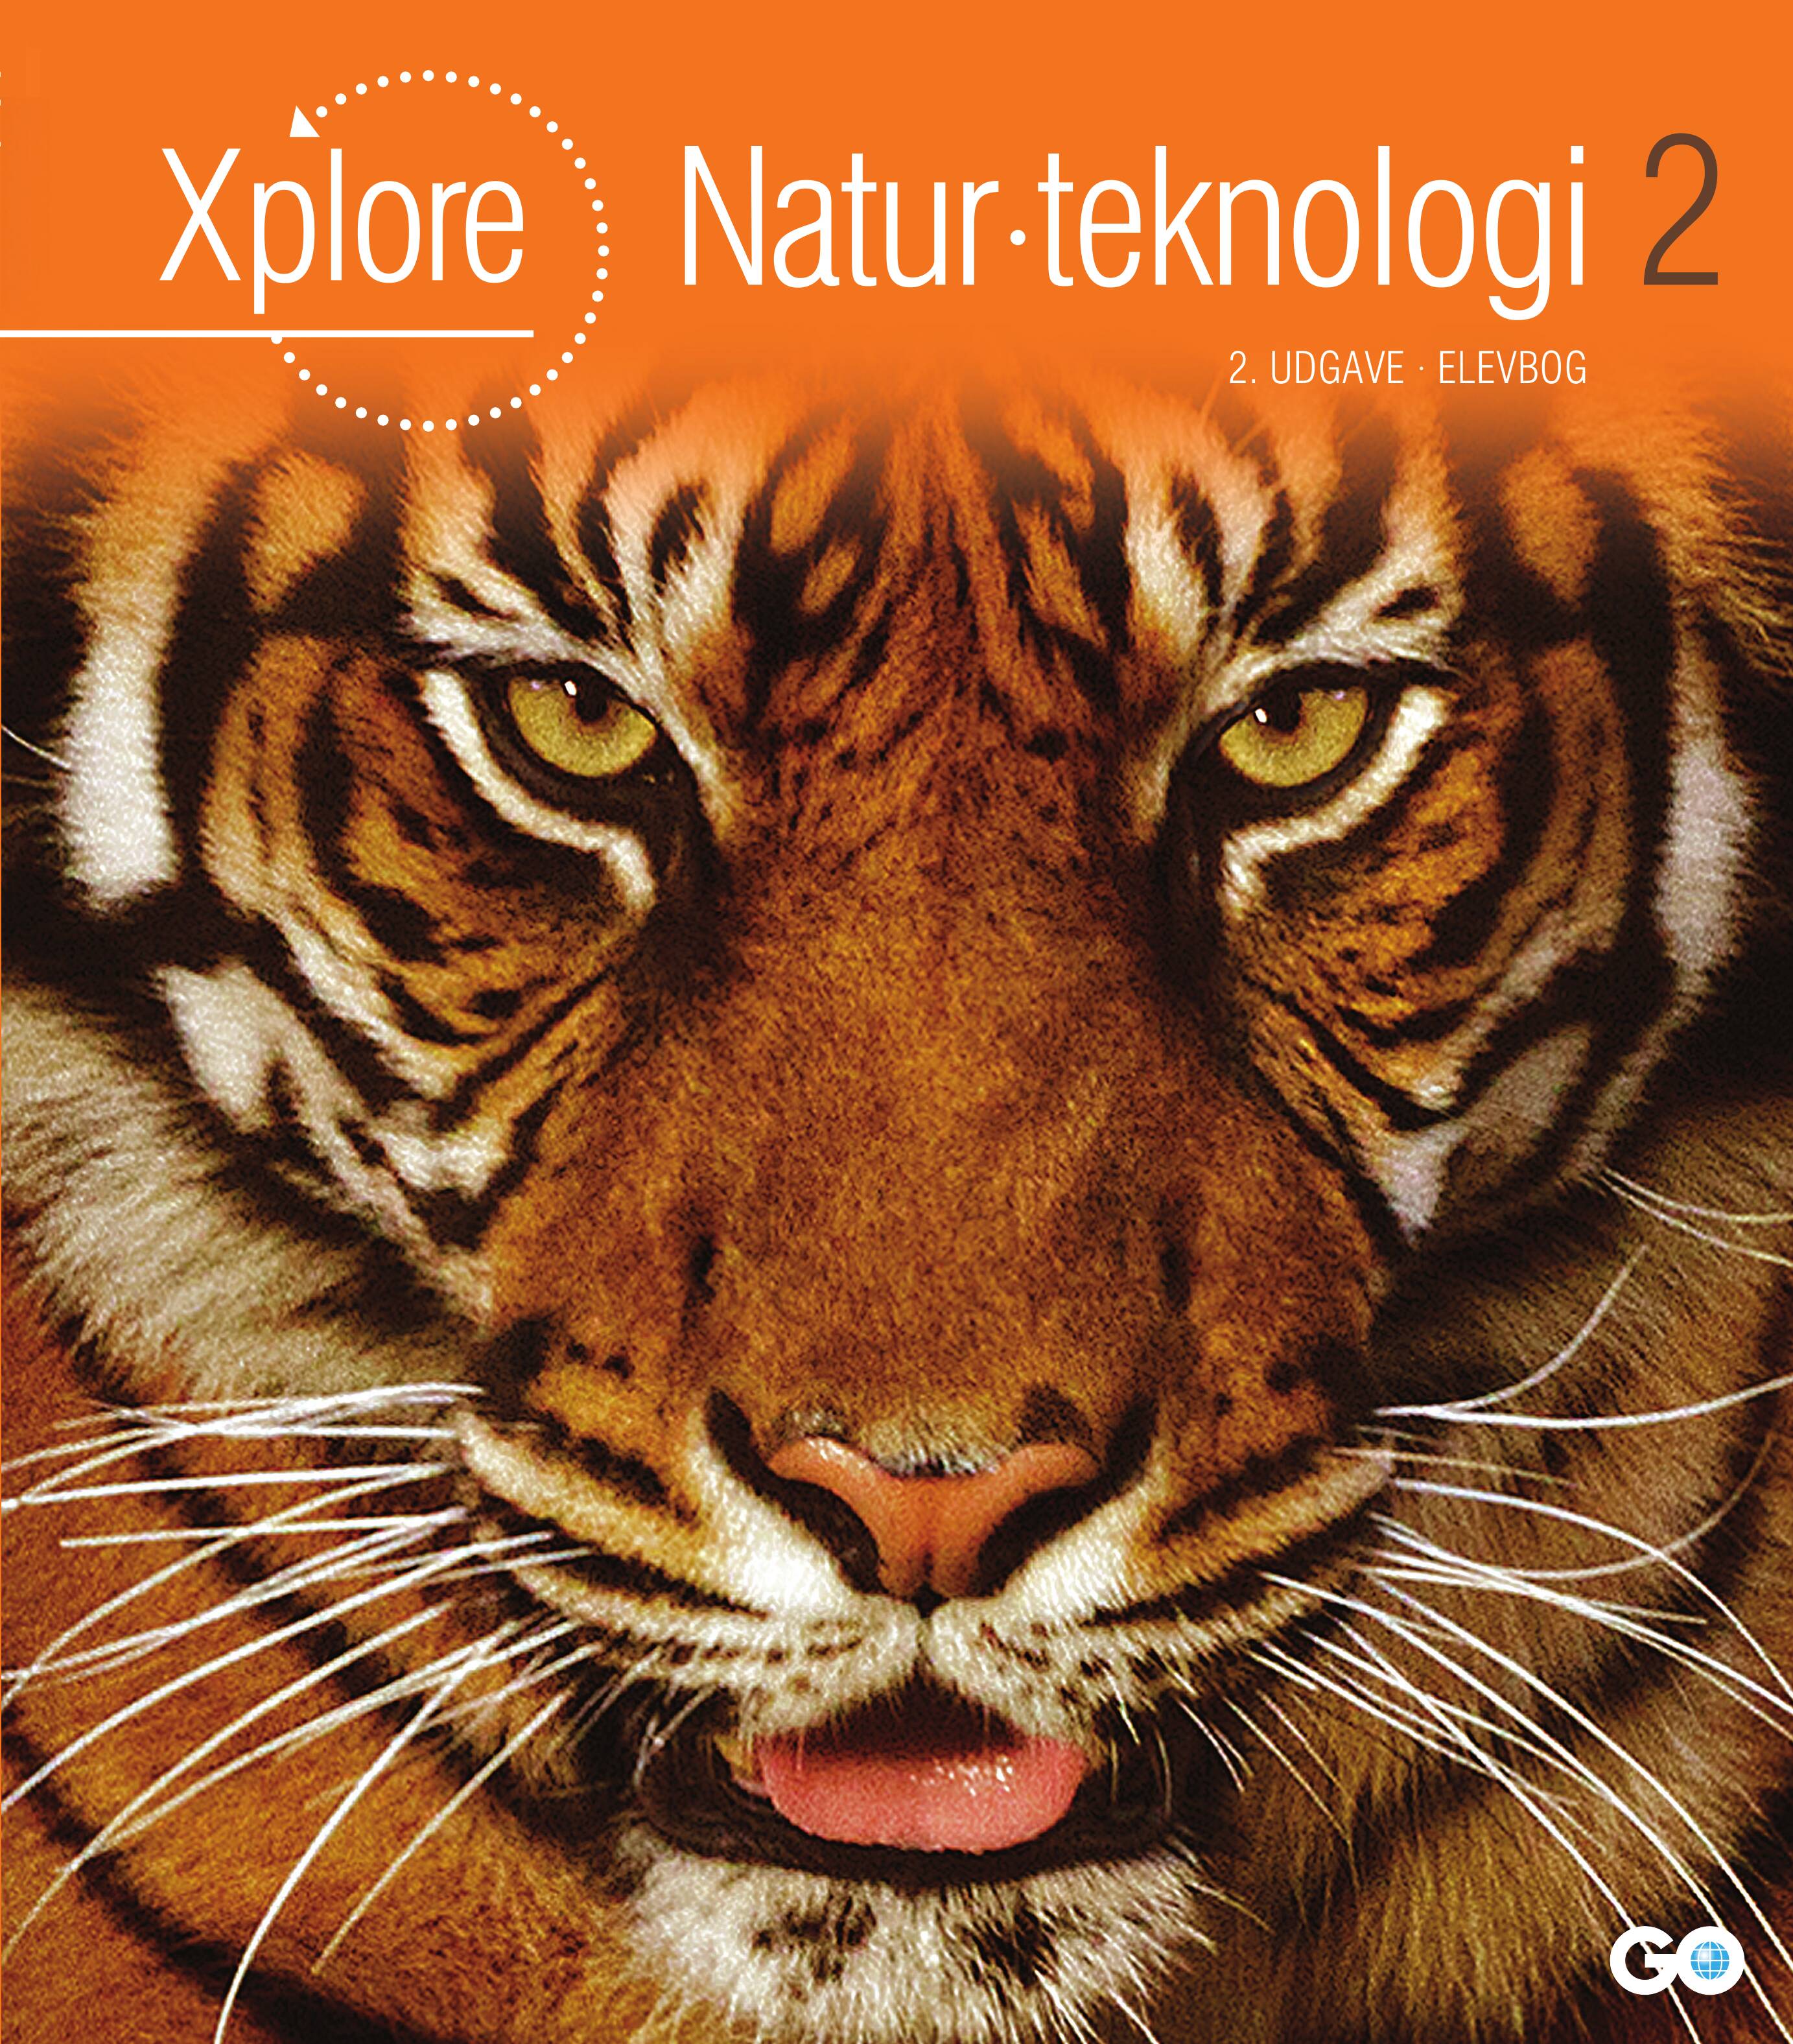 Xplore Natur/teknologi 2 Elevbog - 2. udgave